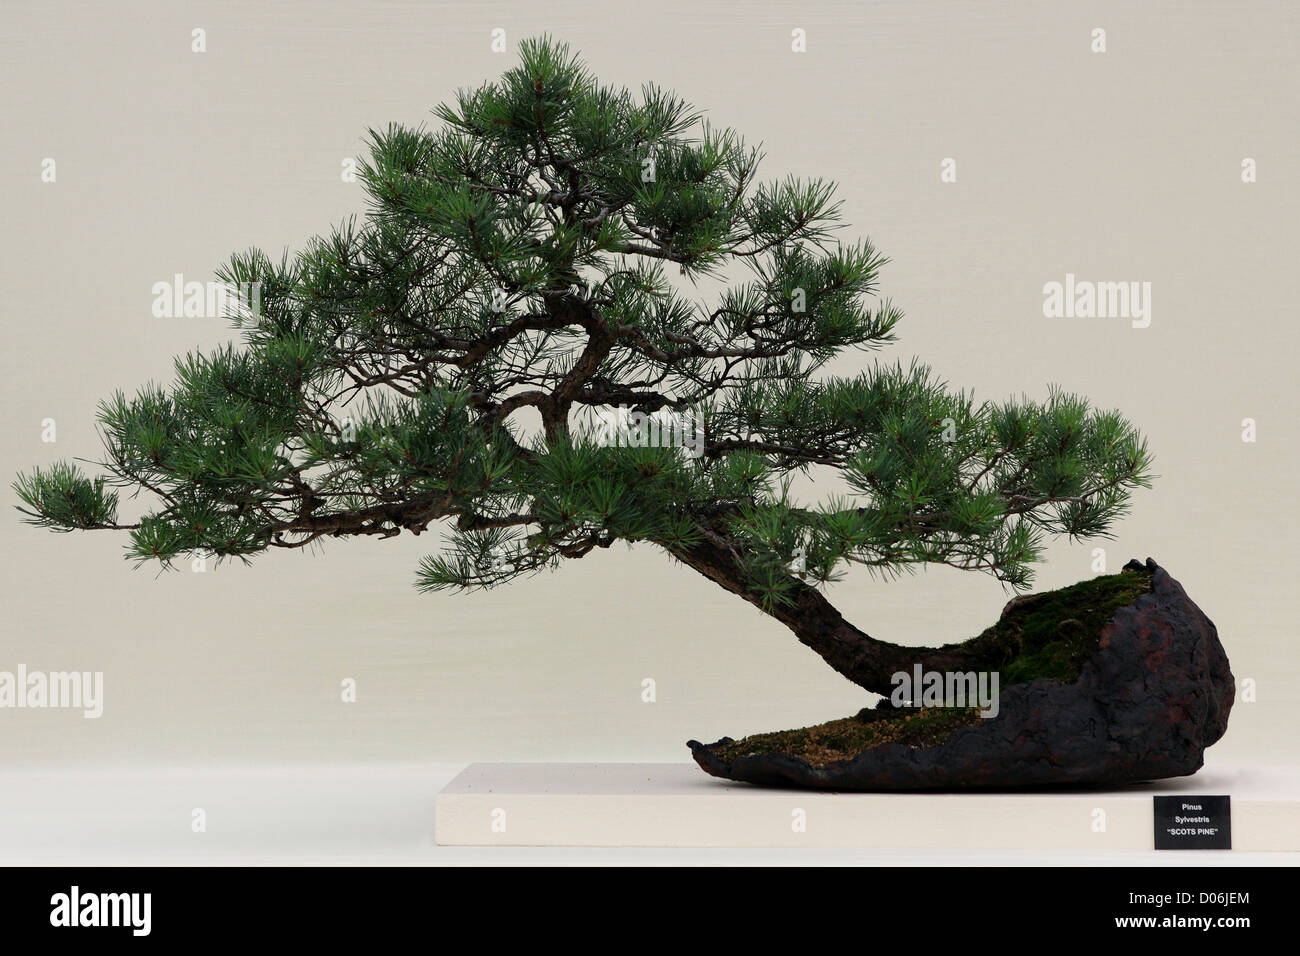 Le pin sylvestre délicate de Bonsai (Pinus sylvestris) sur un fond clair. Banque D'Images